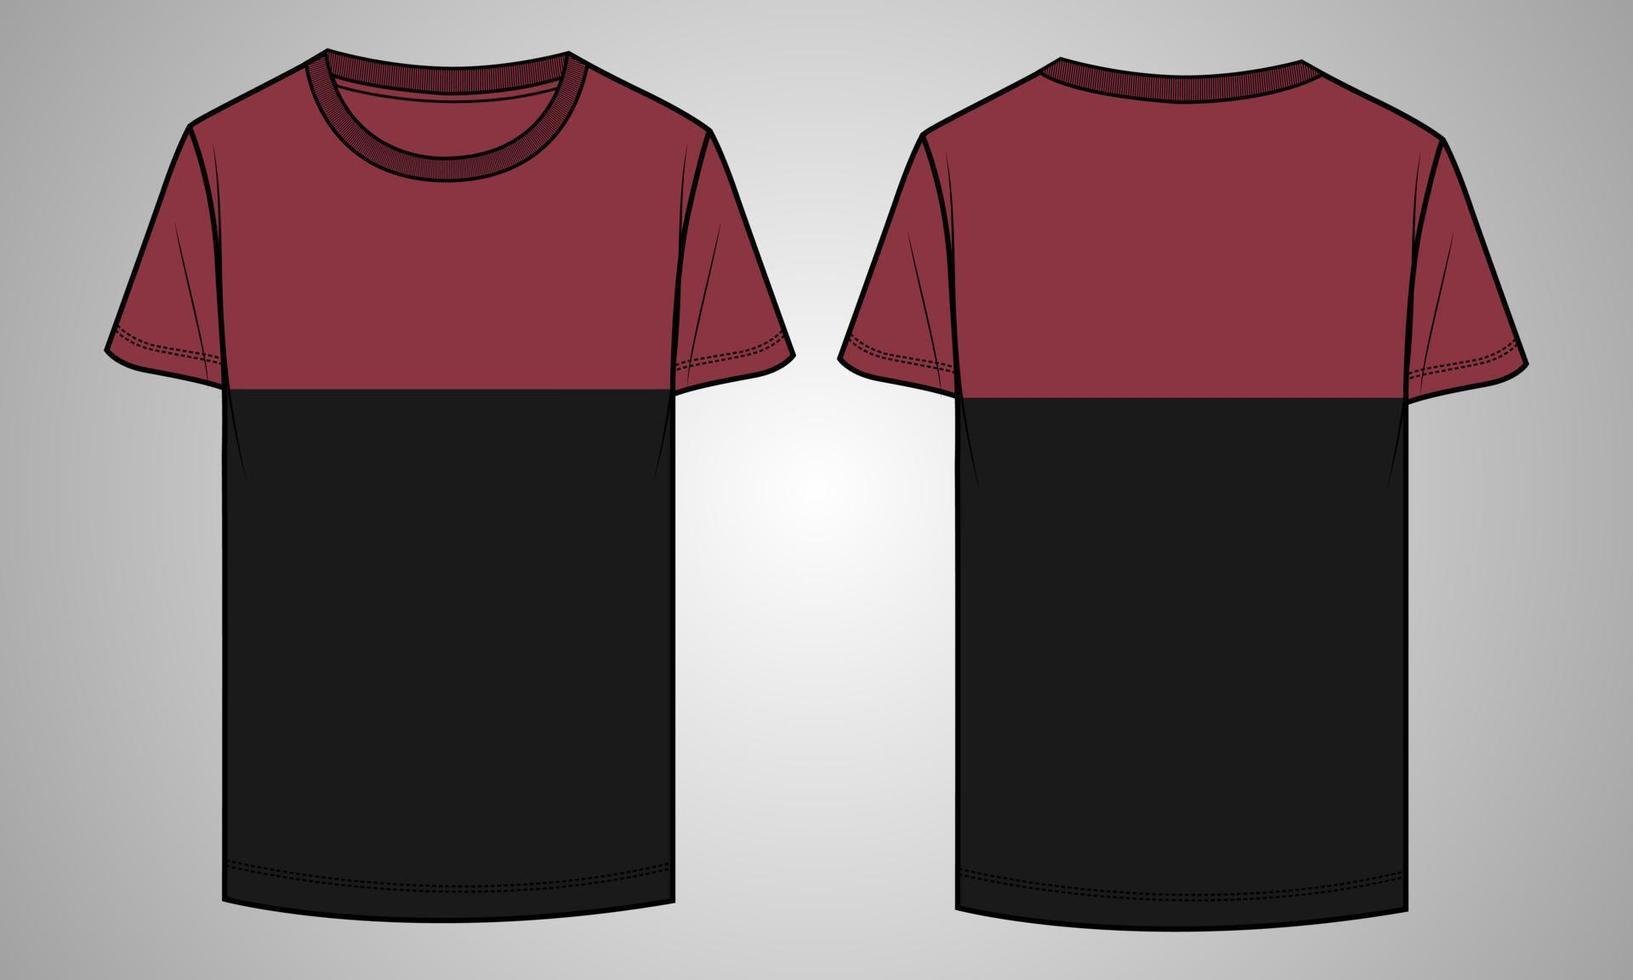 zweifarbig mit Brustschnitt und Kurzarm-T-Shirt-Vektorillustrationsvorlage Vorder- und Rückansicht vektor